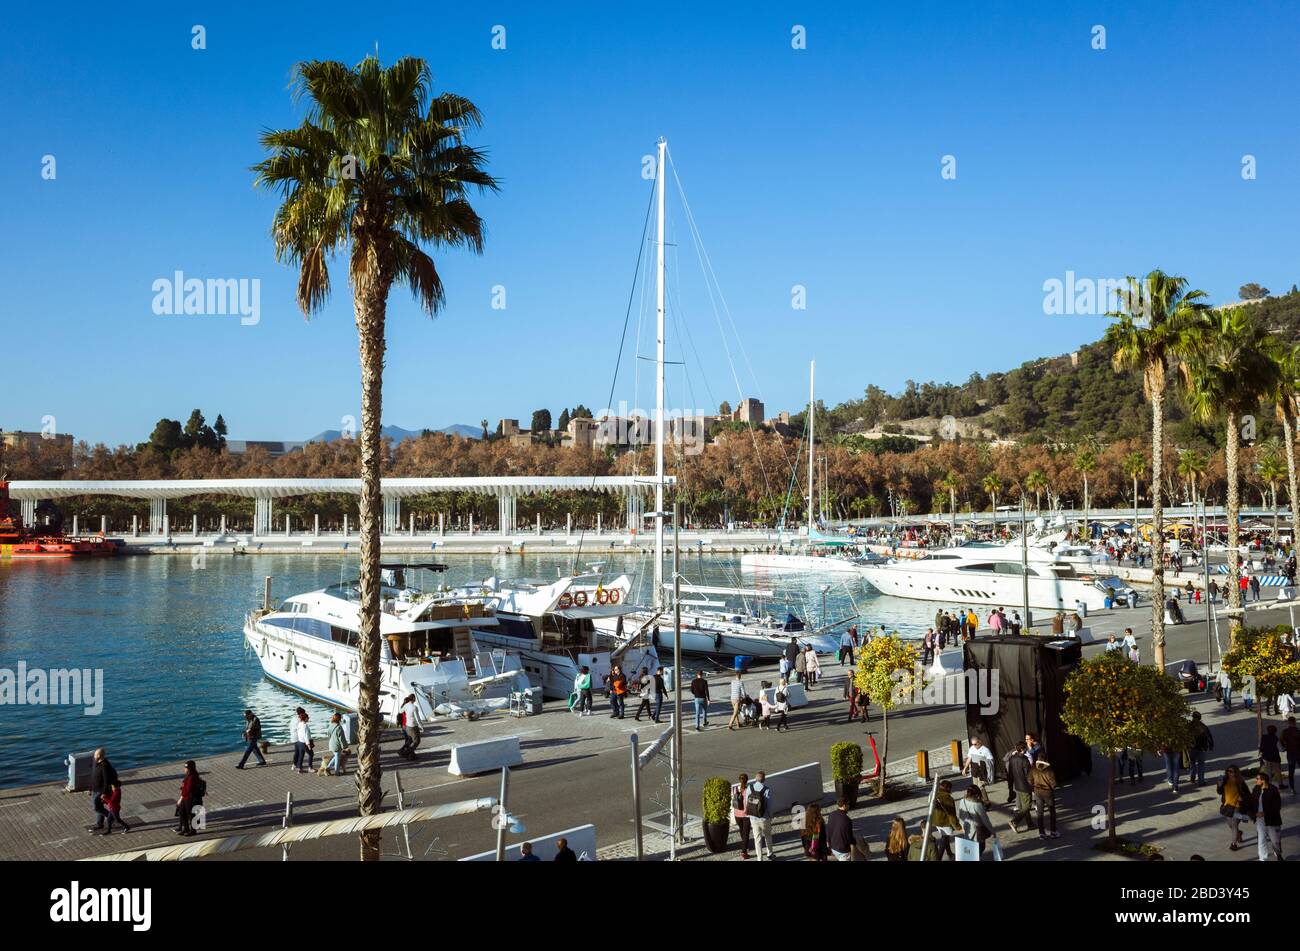 Malaga, Spain : Boats moored at the Marina of Malaga. Alcazaba in background. Stock Photo